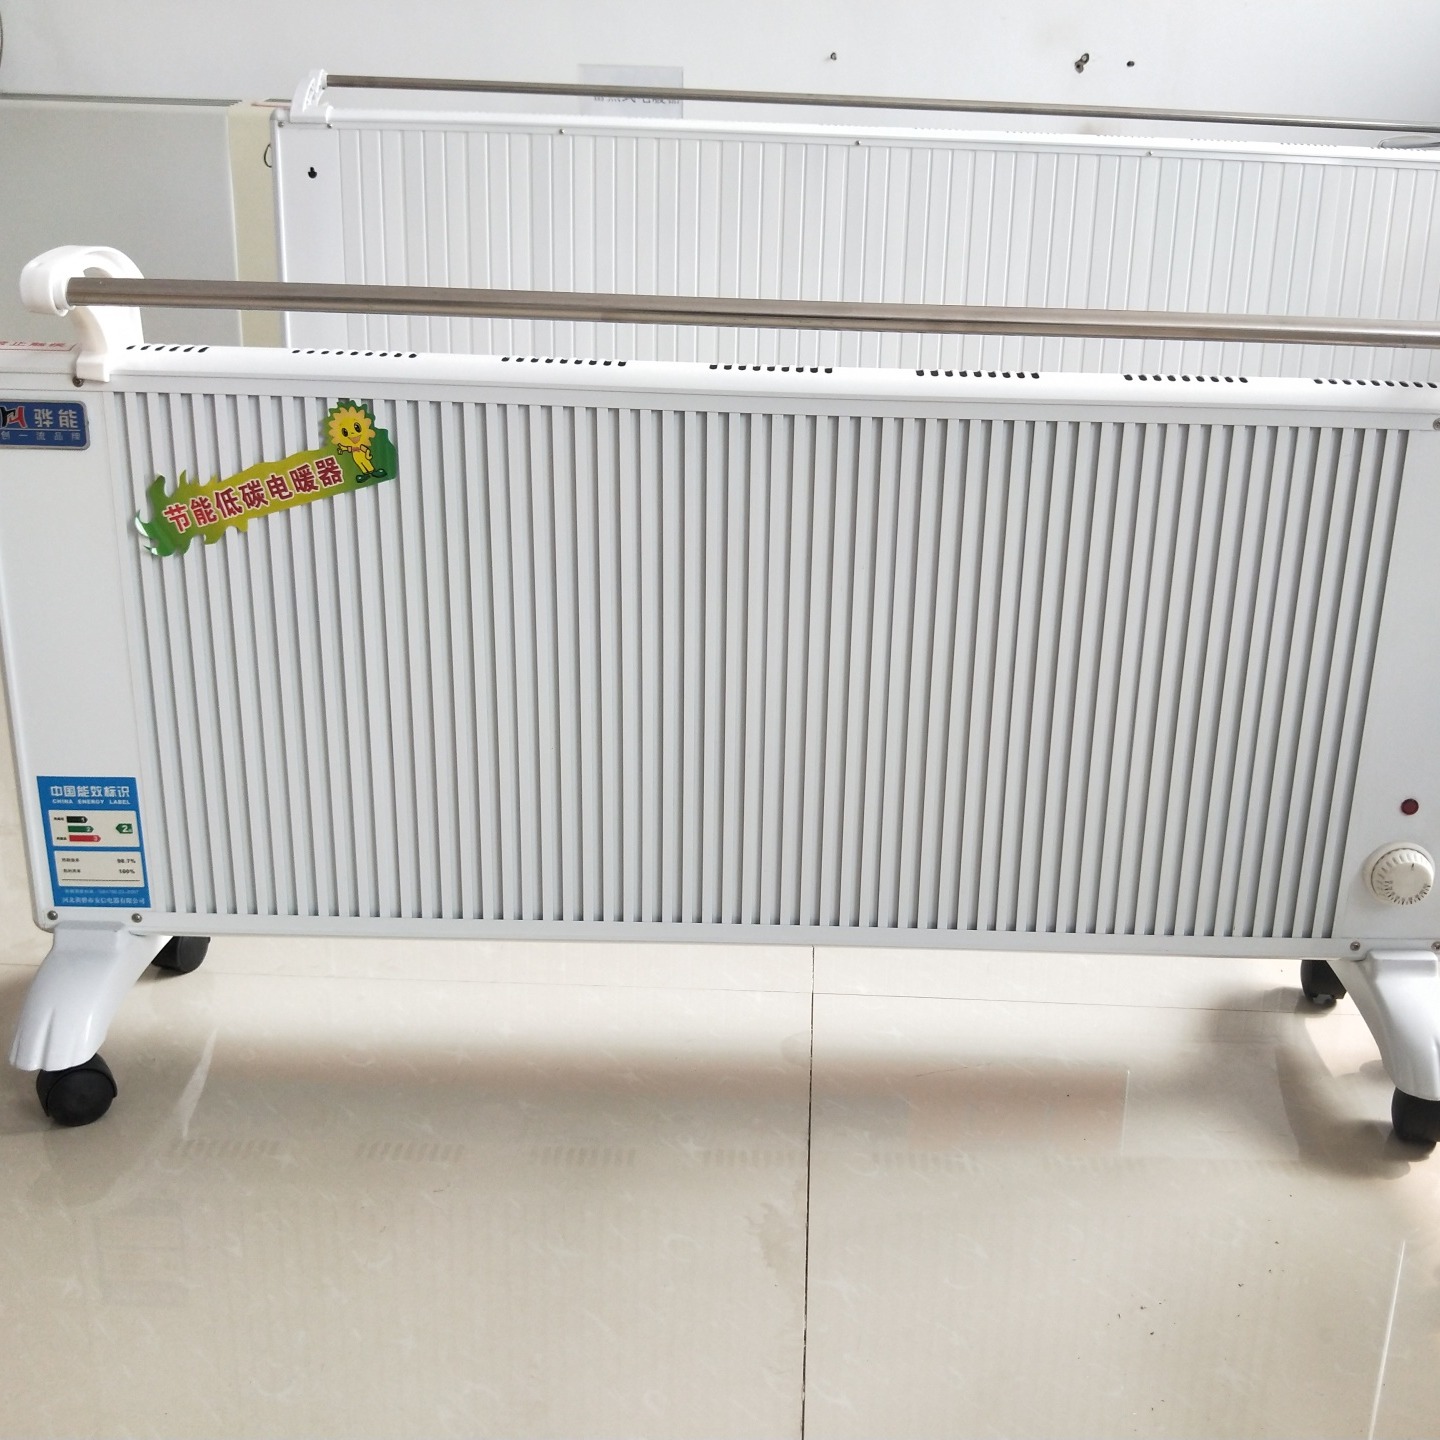 鑫达美裕供应生产 GRTJ-2000电暖器 电加热暖气片 家用电注水电暖器片 生产供应